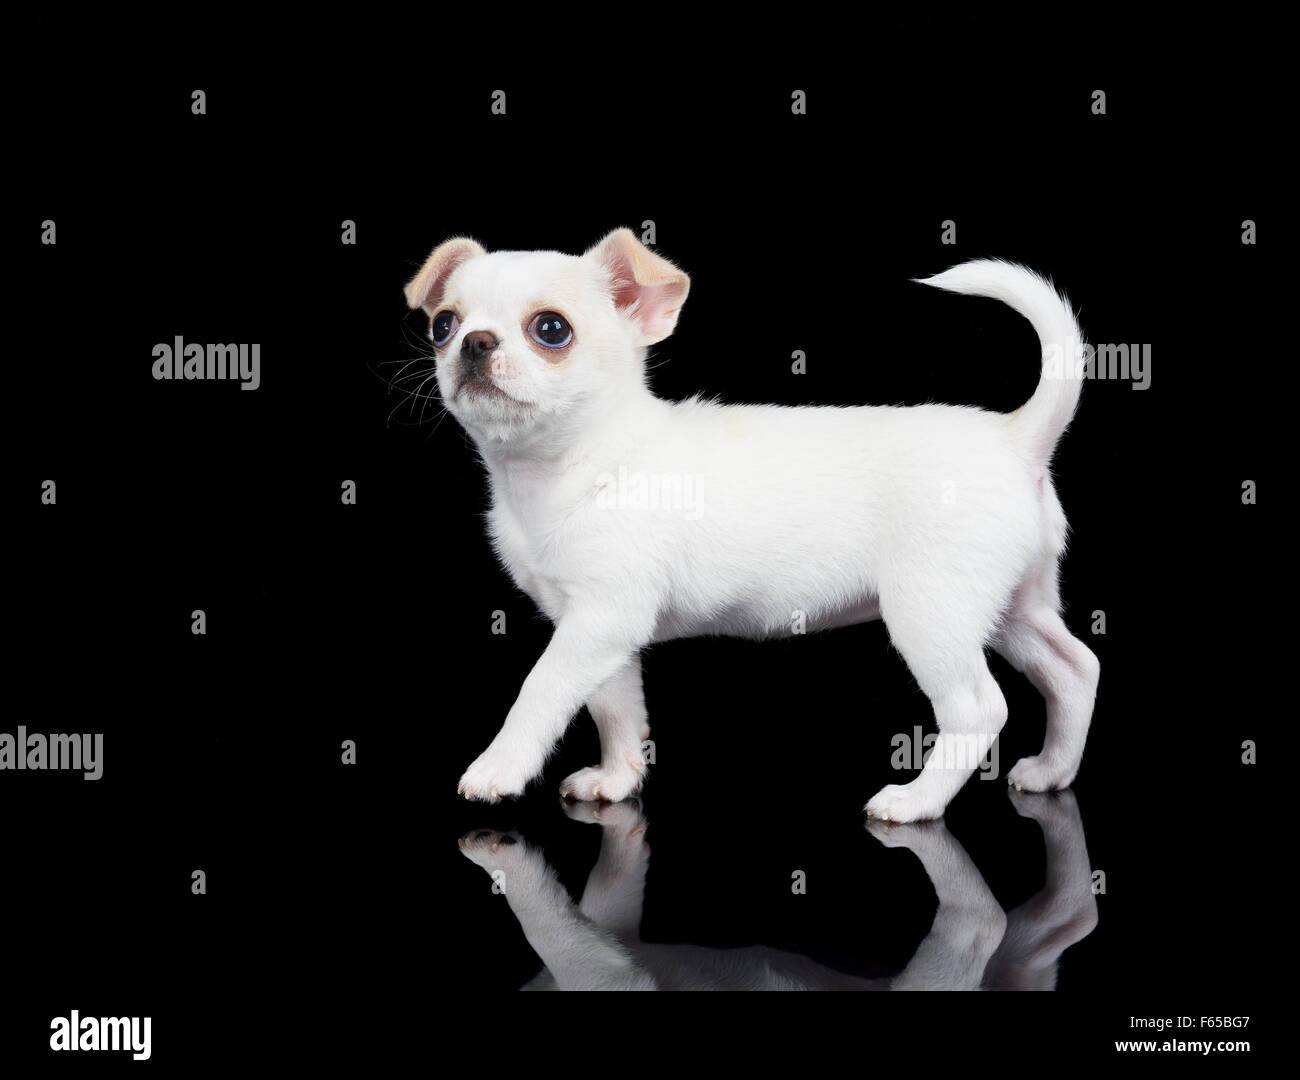 De Chihuahua chiot blanc marche sur fond noir reflétant Banque D'Images